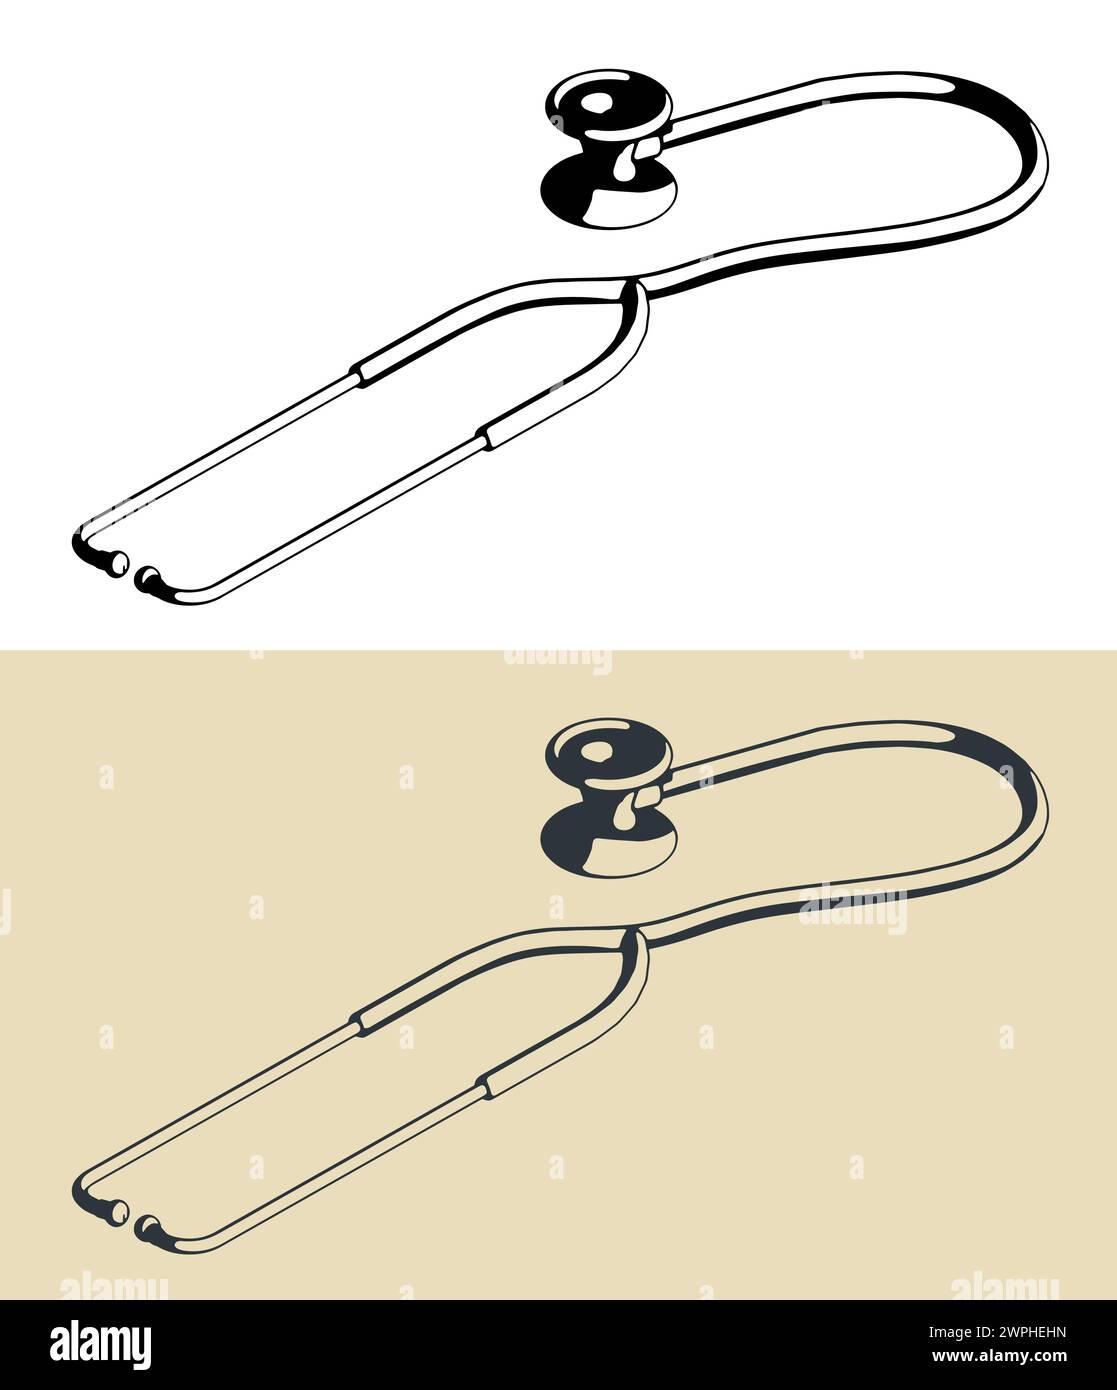 Illustrazioni vettoriali stilizzate di uno stetoscopio Illustrazione Vettoriale